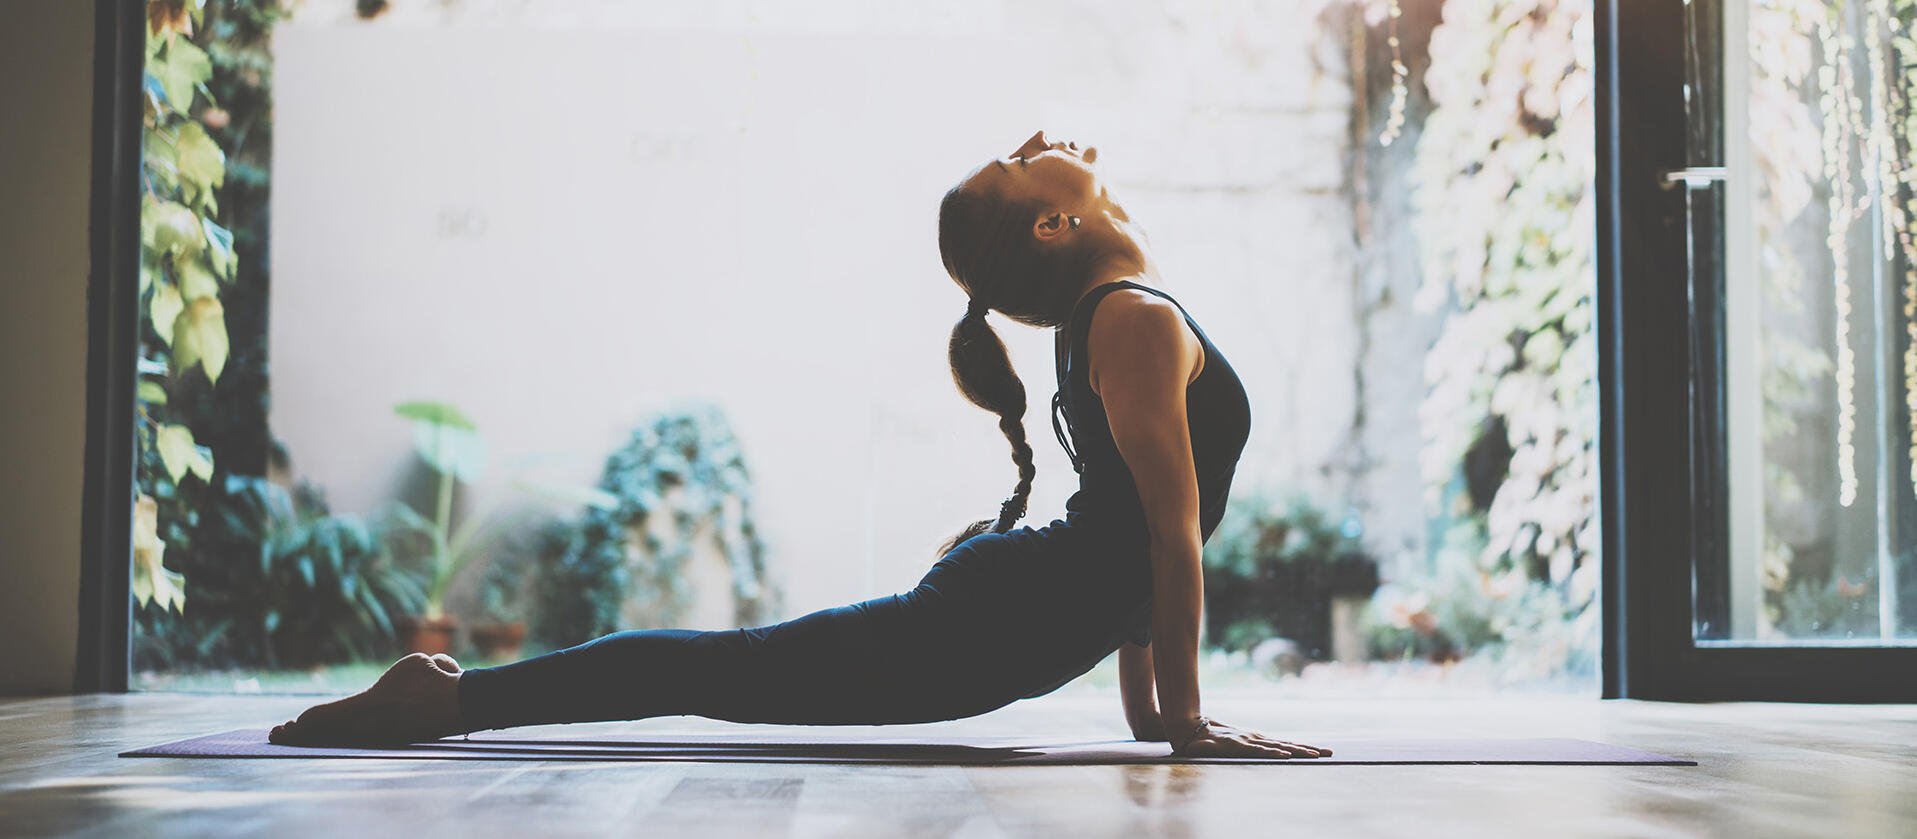 Junge Frau macht Yoga-Übung 